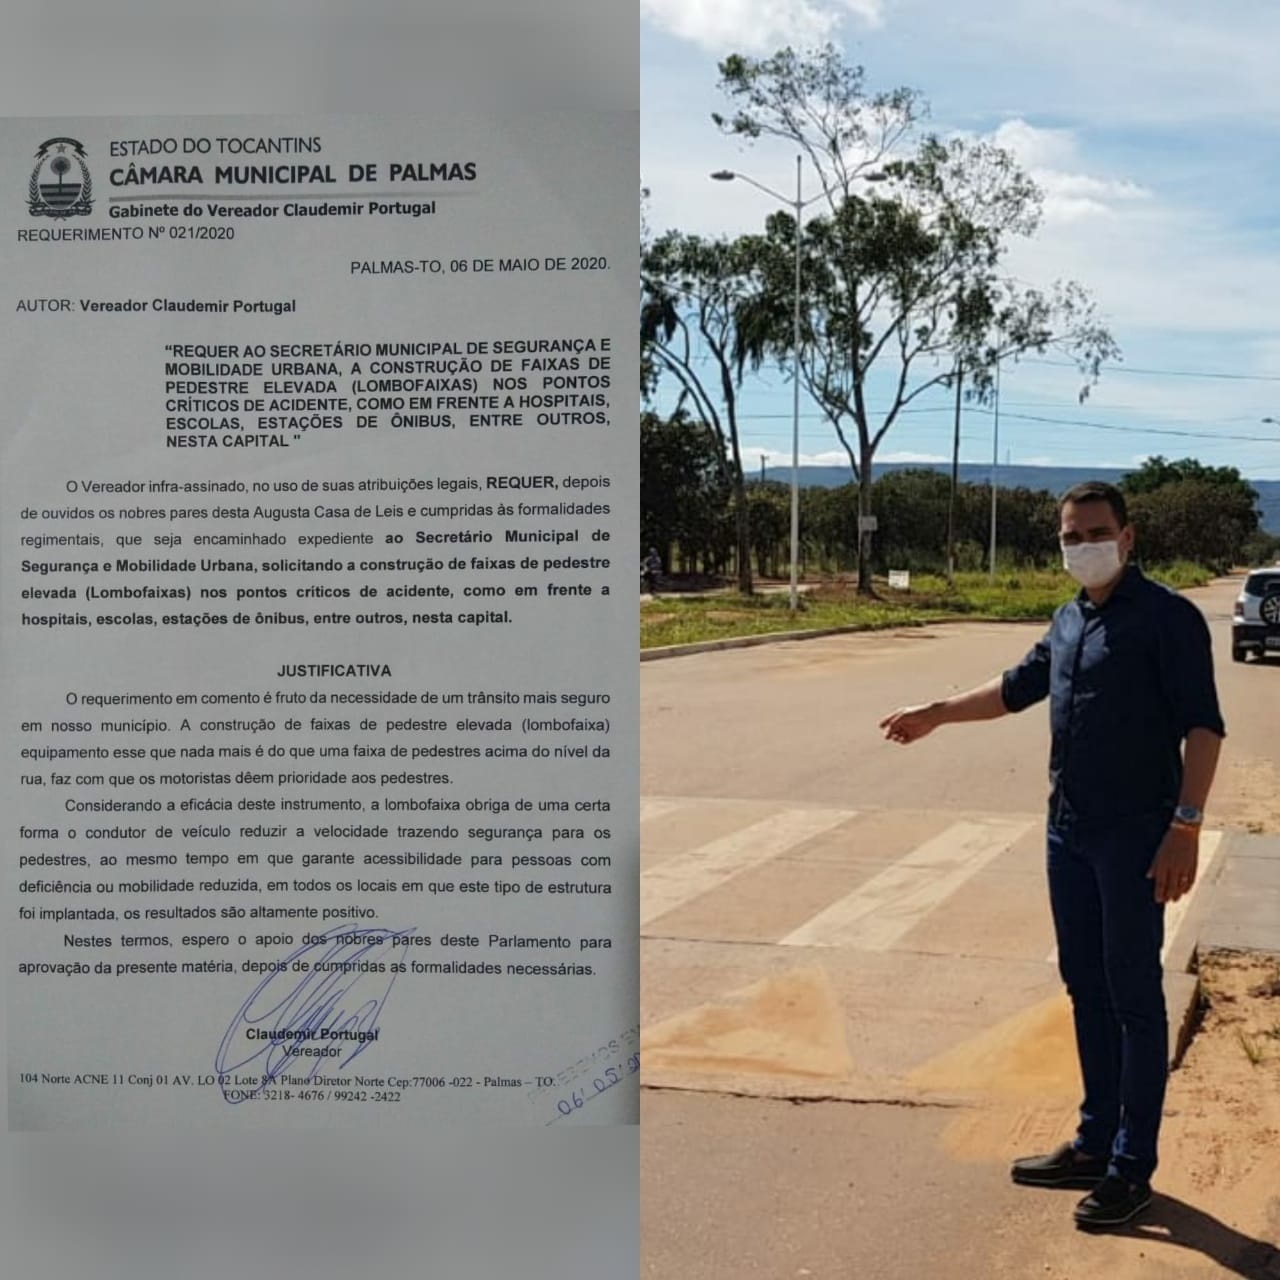 Vereador Claudemir Portugal solicita instalação de lombofaixas em vias movimentadas de Palmas